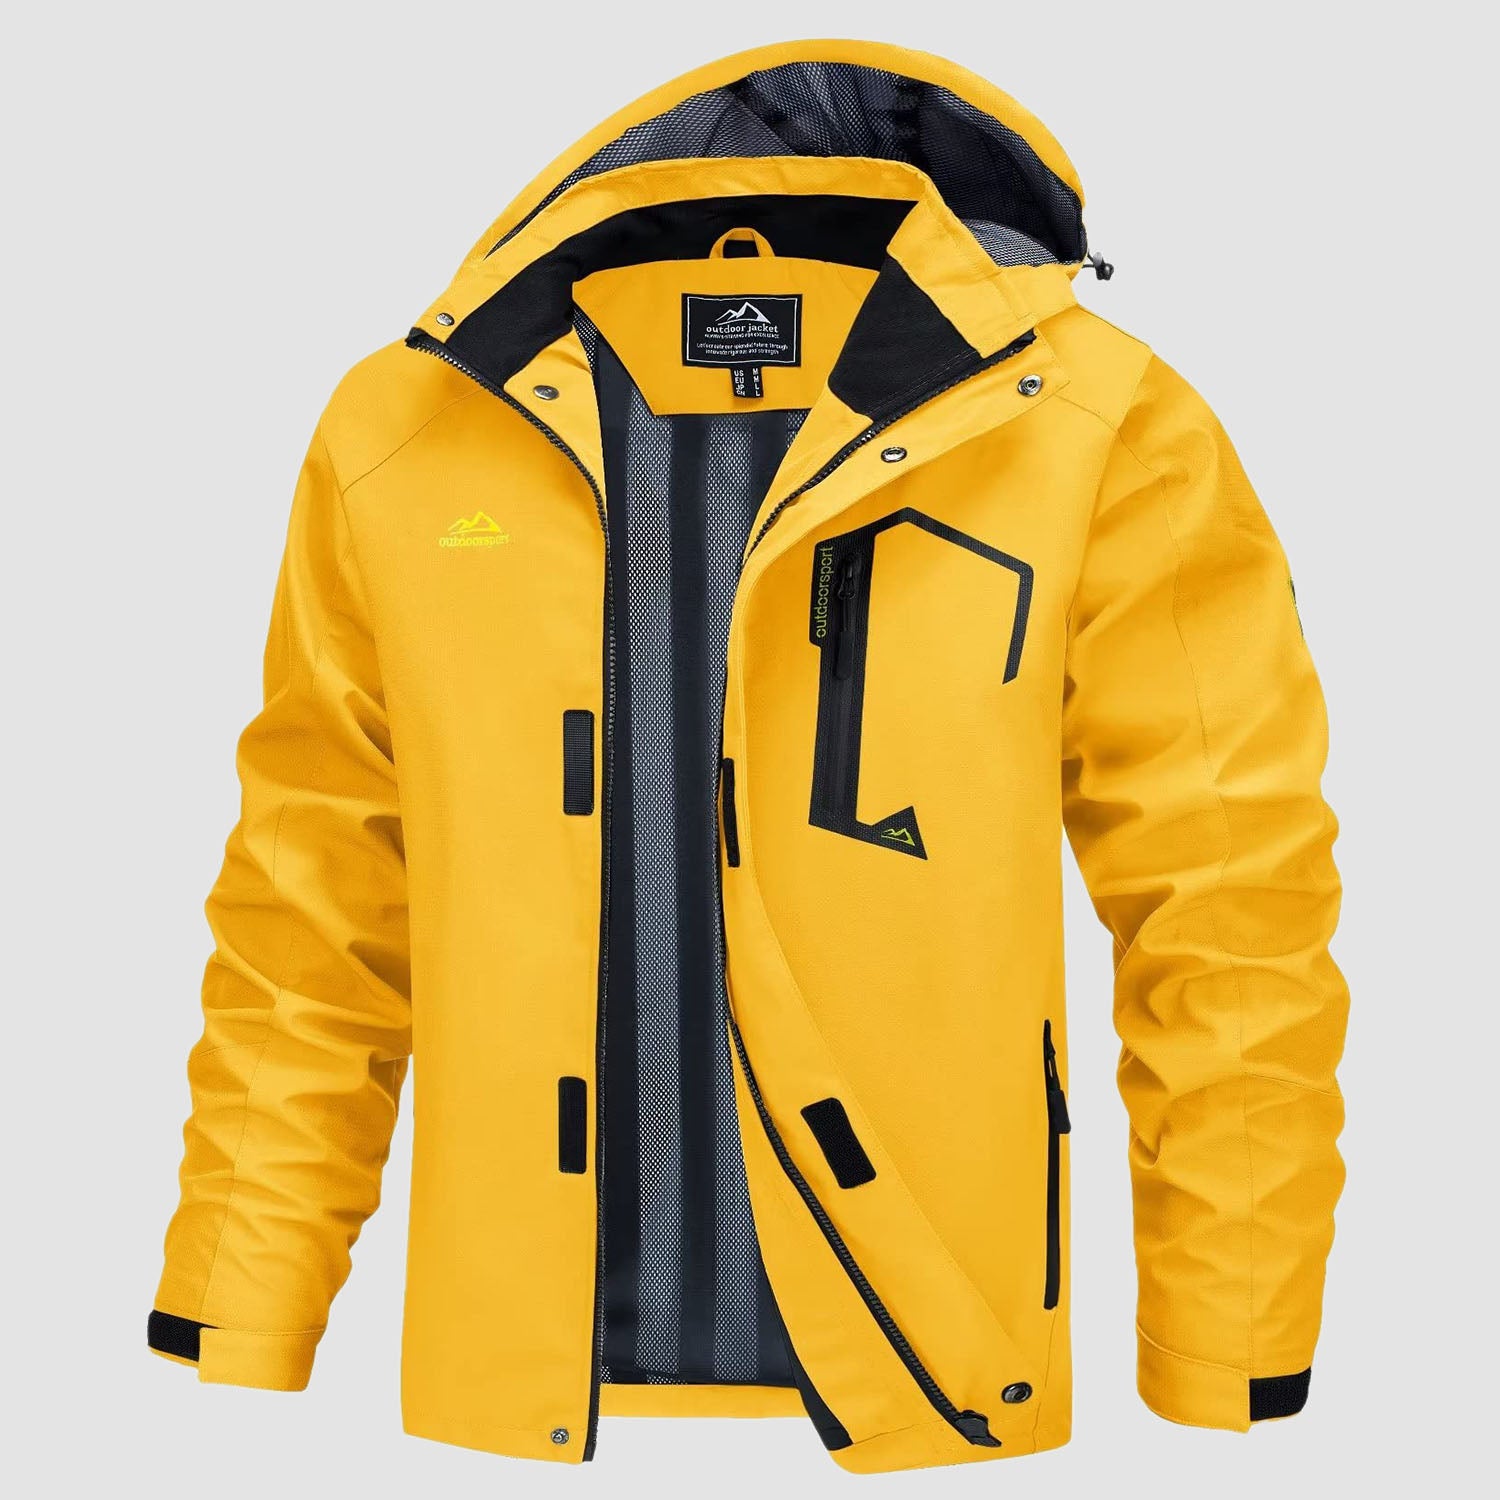 Men's Jacket Water Resistant Windbreaker Coat for Outdoor, Yellow / M